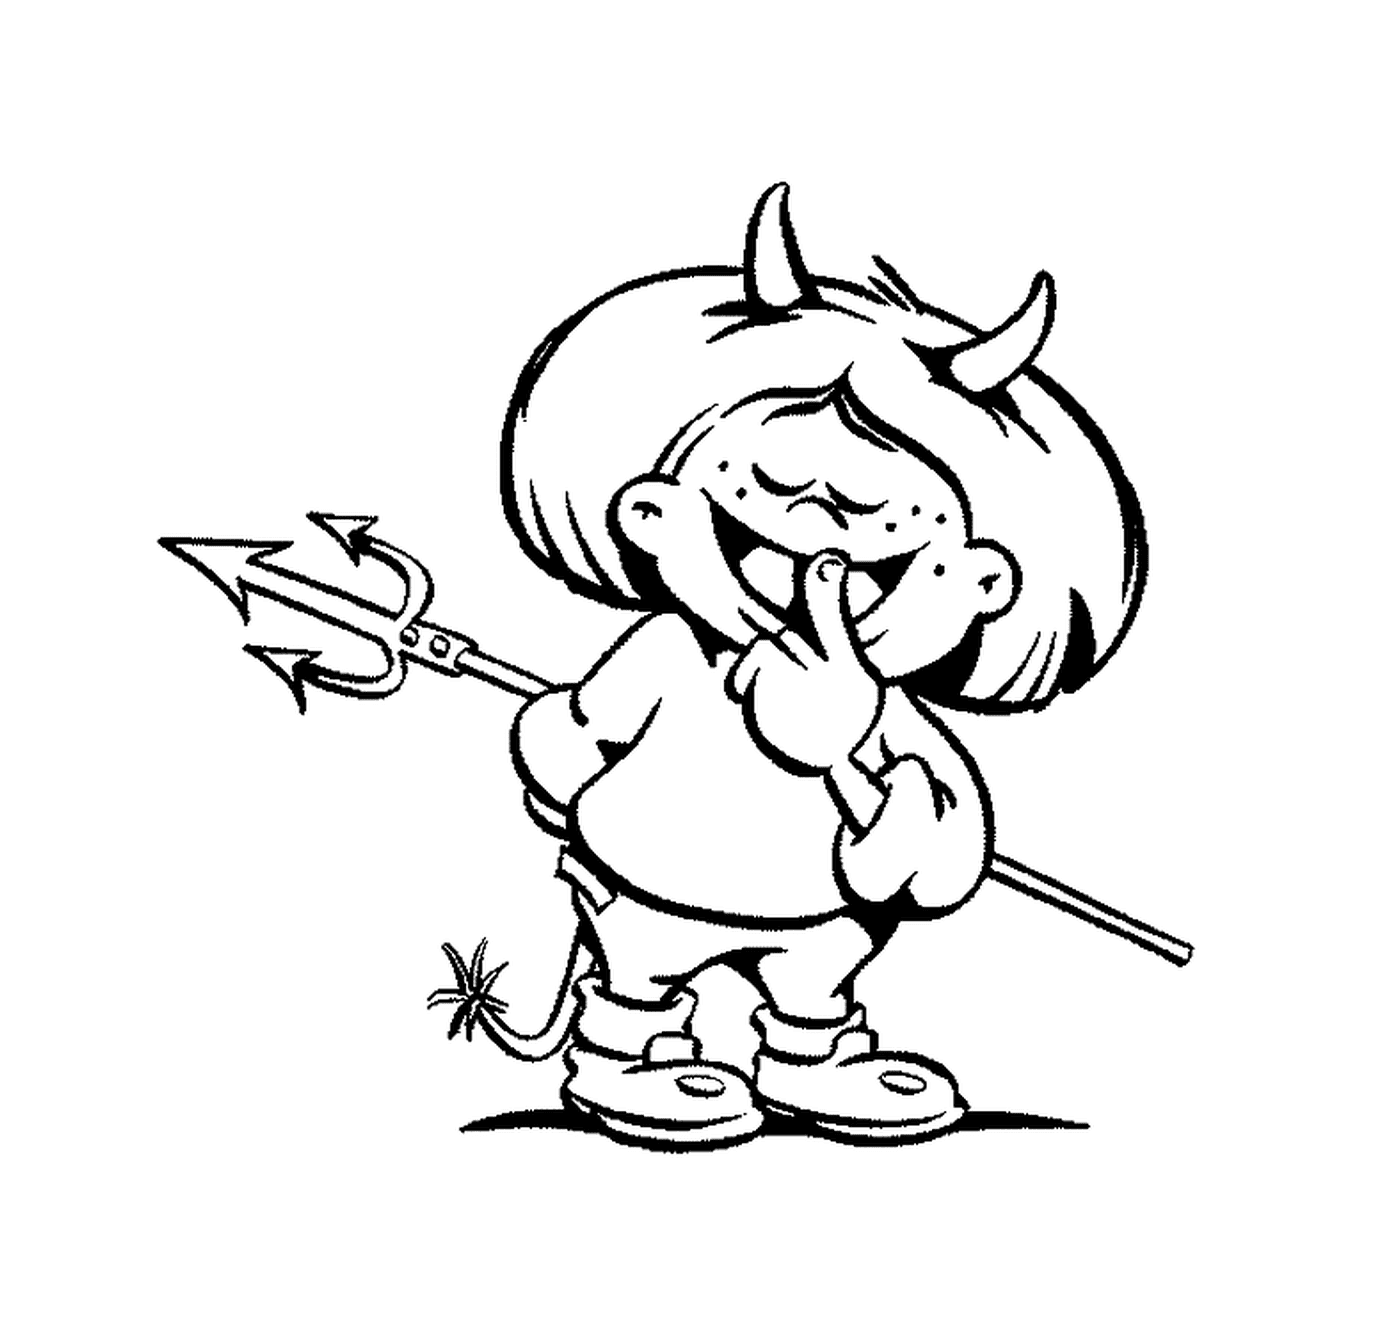  evil little girl with horns and an arrow 